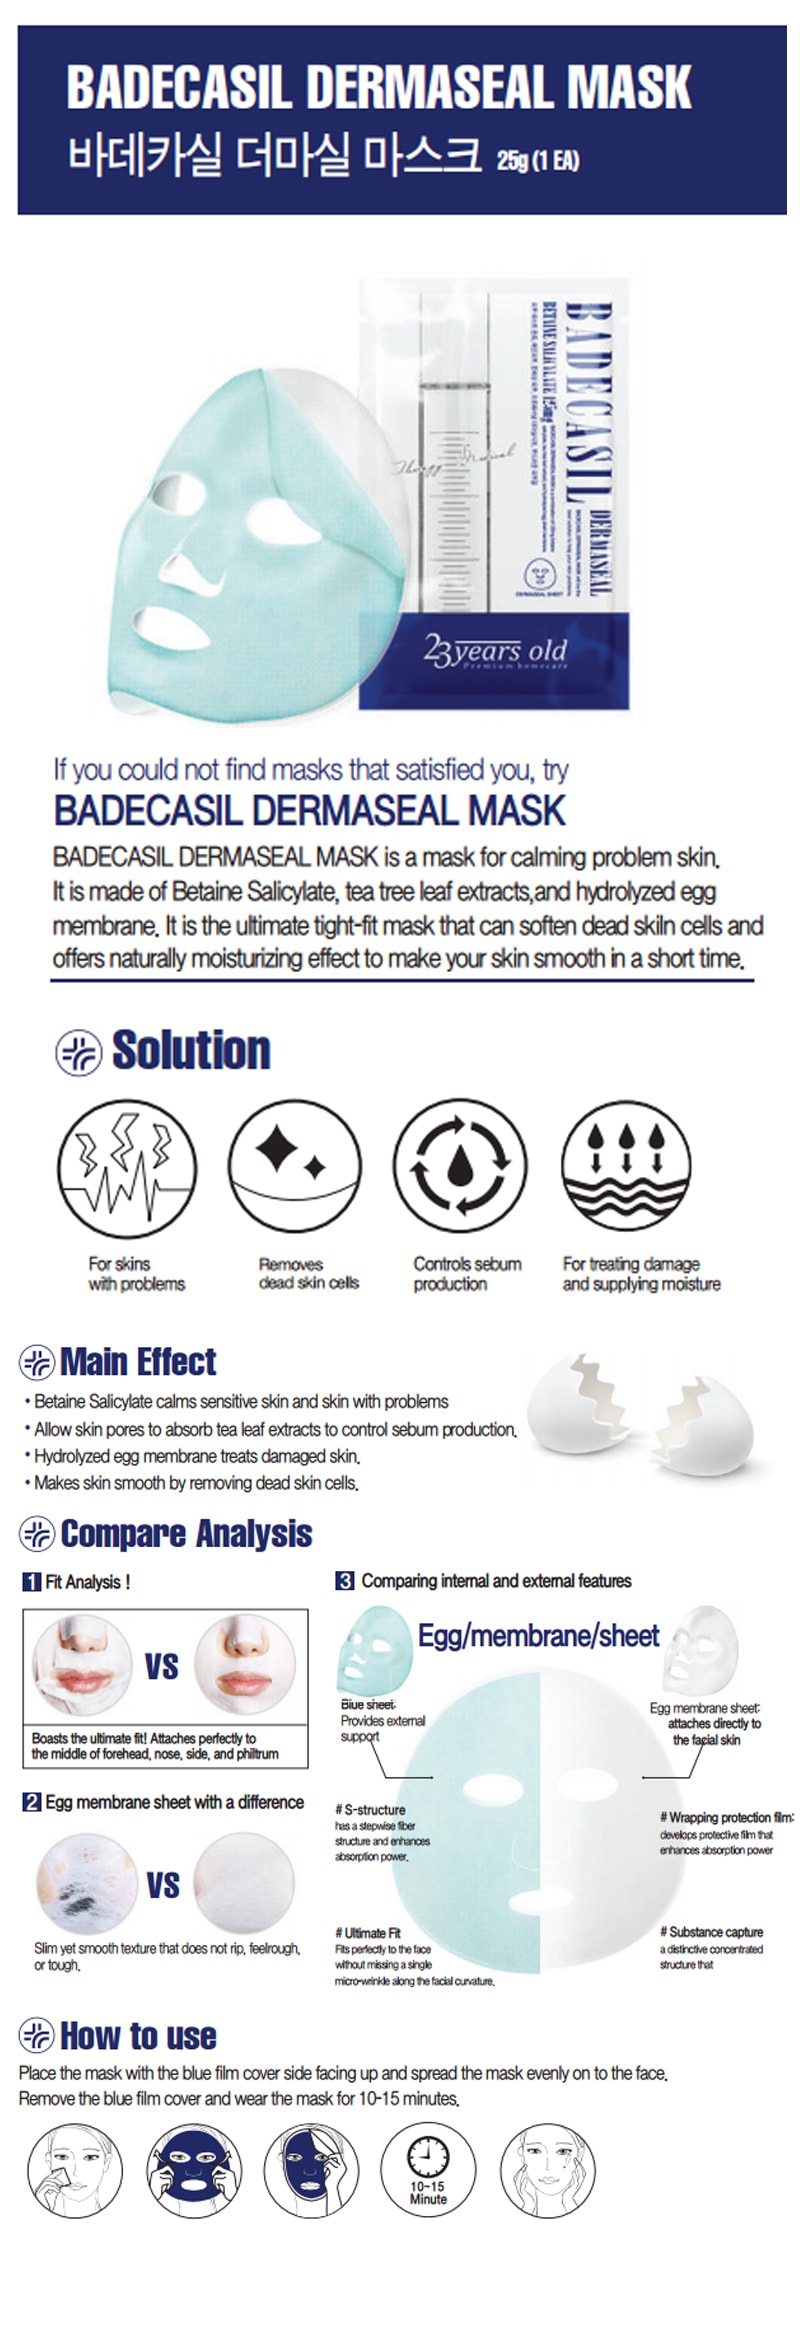 Badecasil Dermaseal Mask